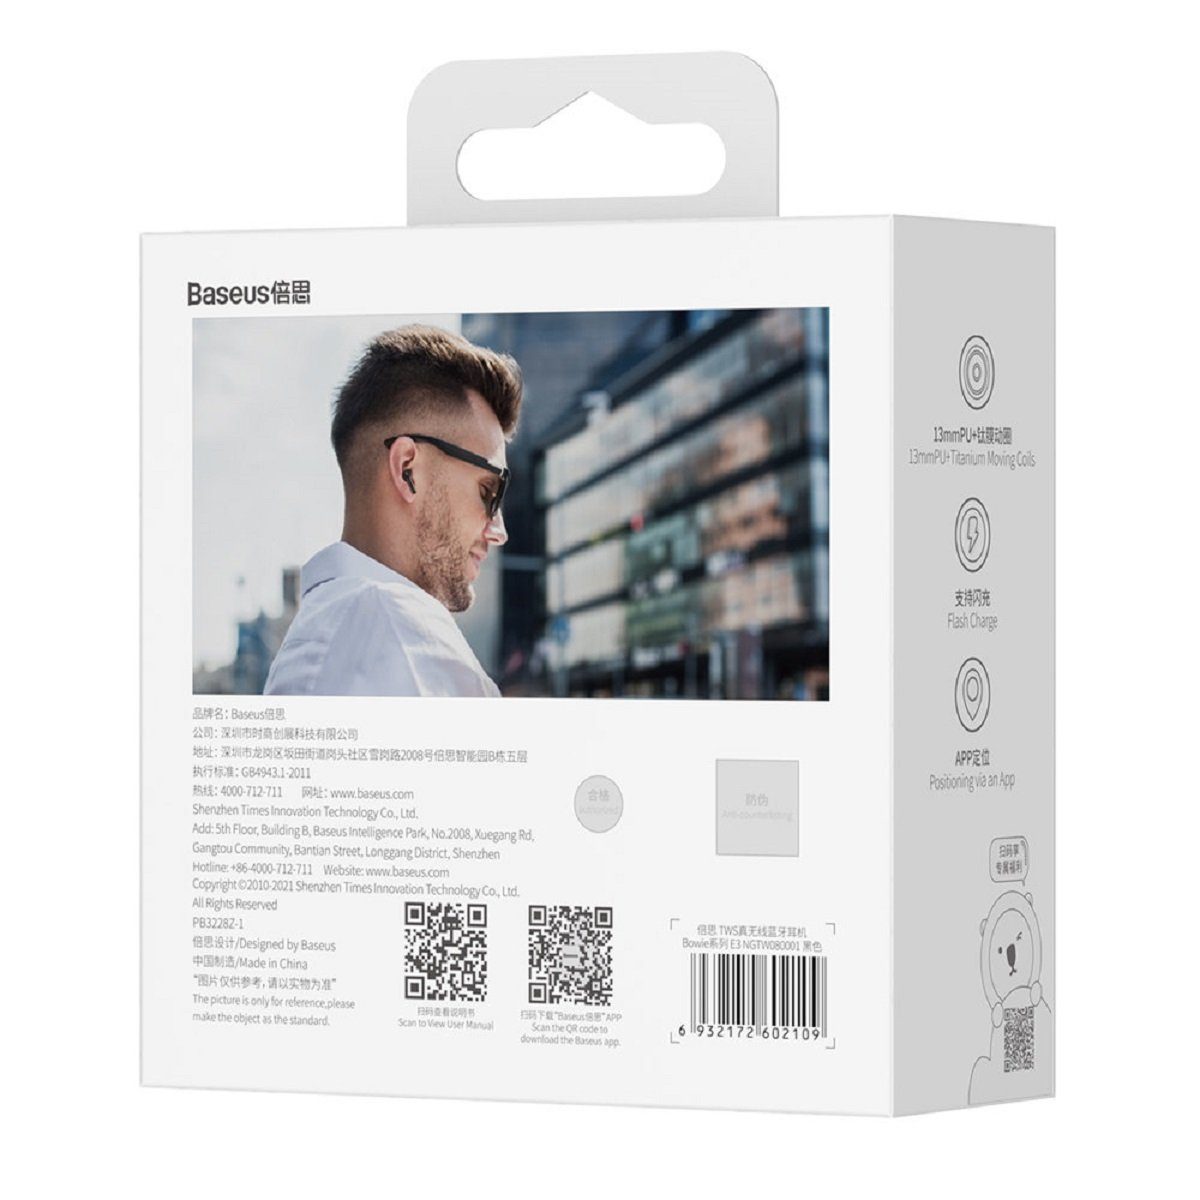 Baseus Baseus E3 Wireless Bluetooth Bluetooth, 5.0 Kopfhörer wasserdicht Touch kabellos) schwarz Control, Bluetooth-Kopfhörer (Bluetooth, IP64